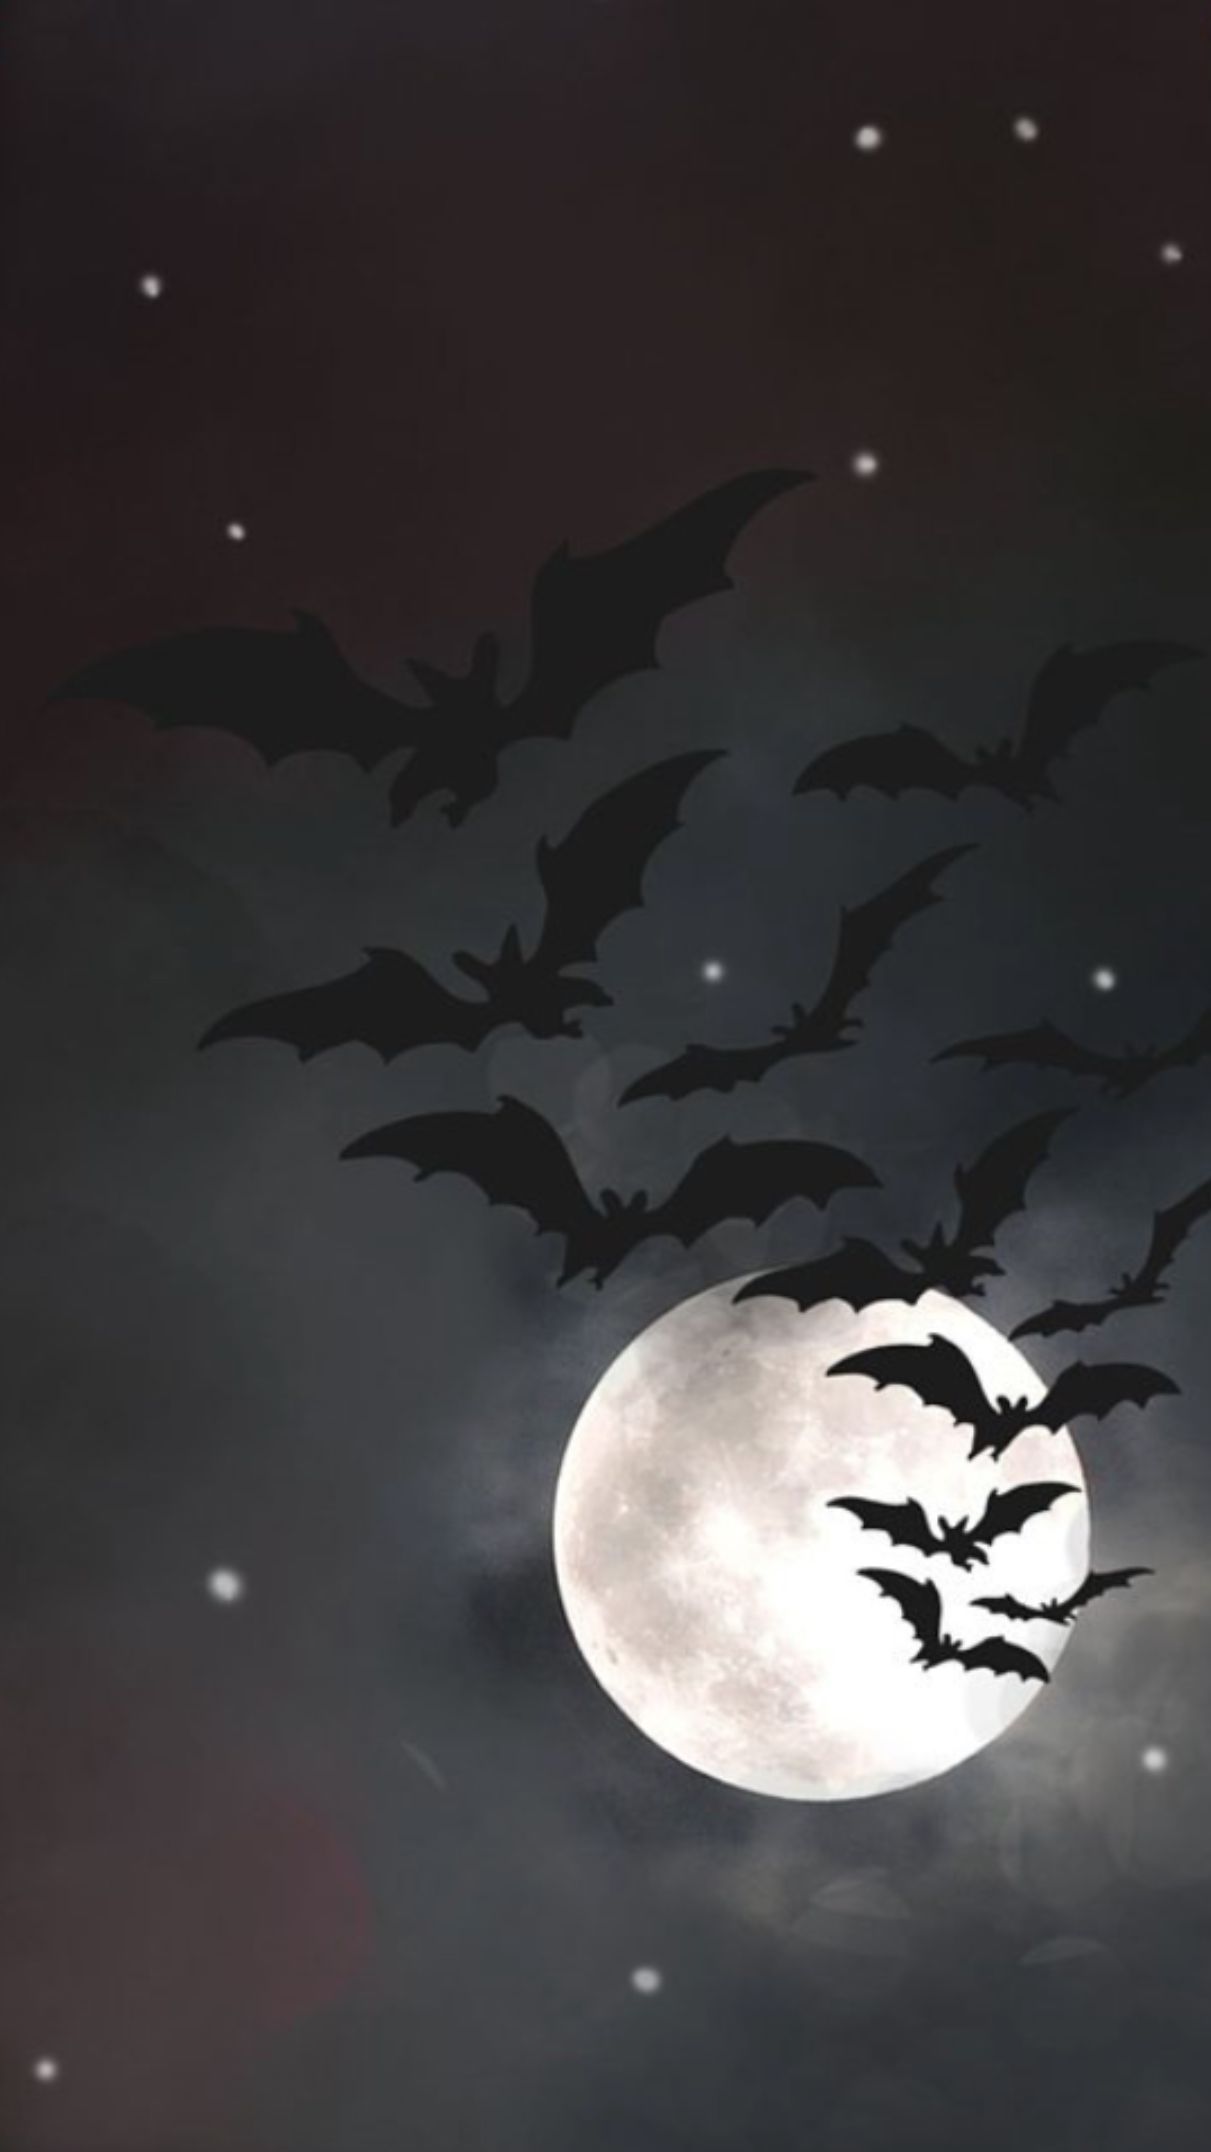 halloweenbackgroundwallpaper. Gothic wallpaper, Halloween wallpaper iphone, Halloween background